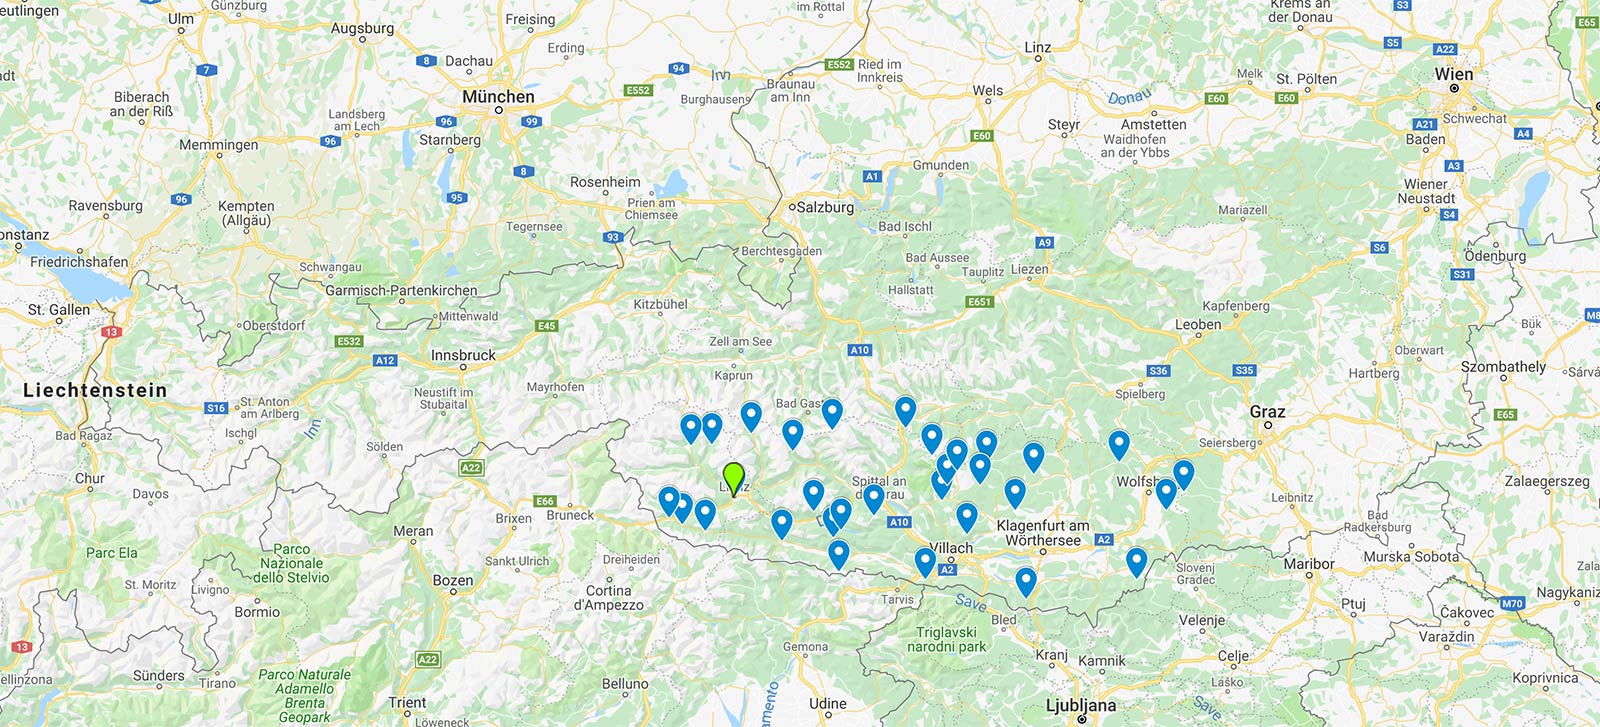 Übersicht: Die Gebiete des TopSkiPass - Kärnten & Osttirol